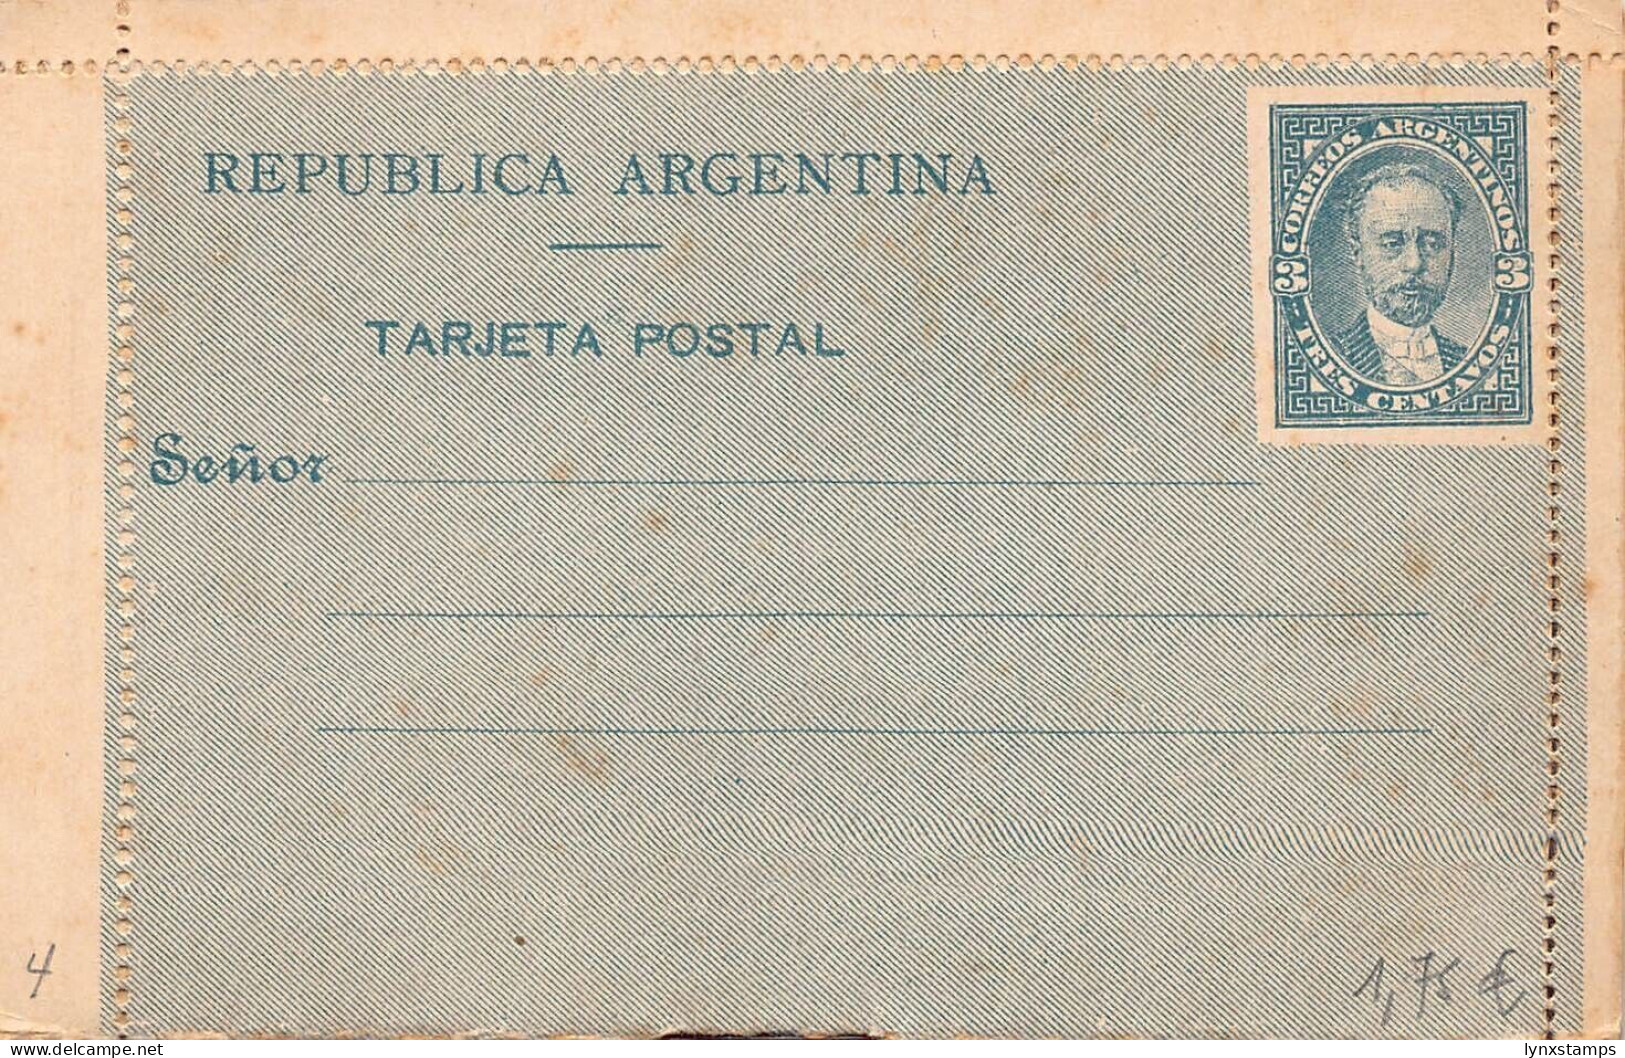 G021 Argentina Unused Postal Stationery 3 Centavos. - Ganzsachen